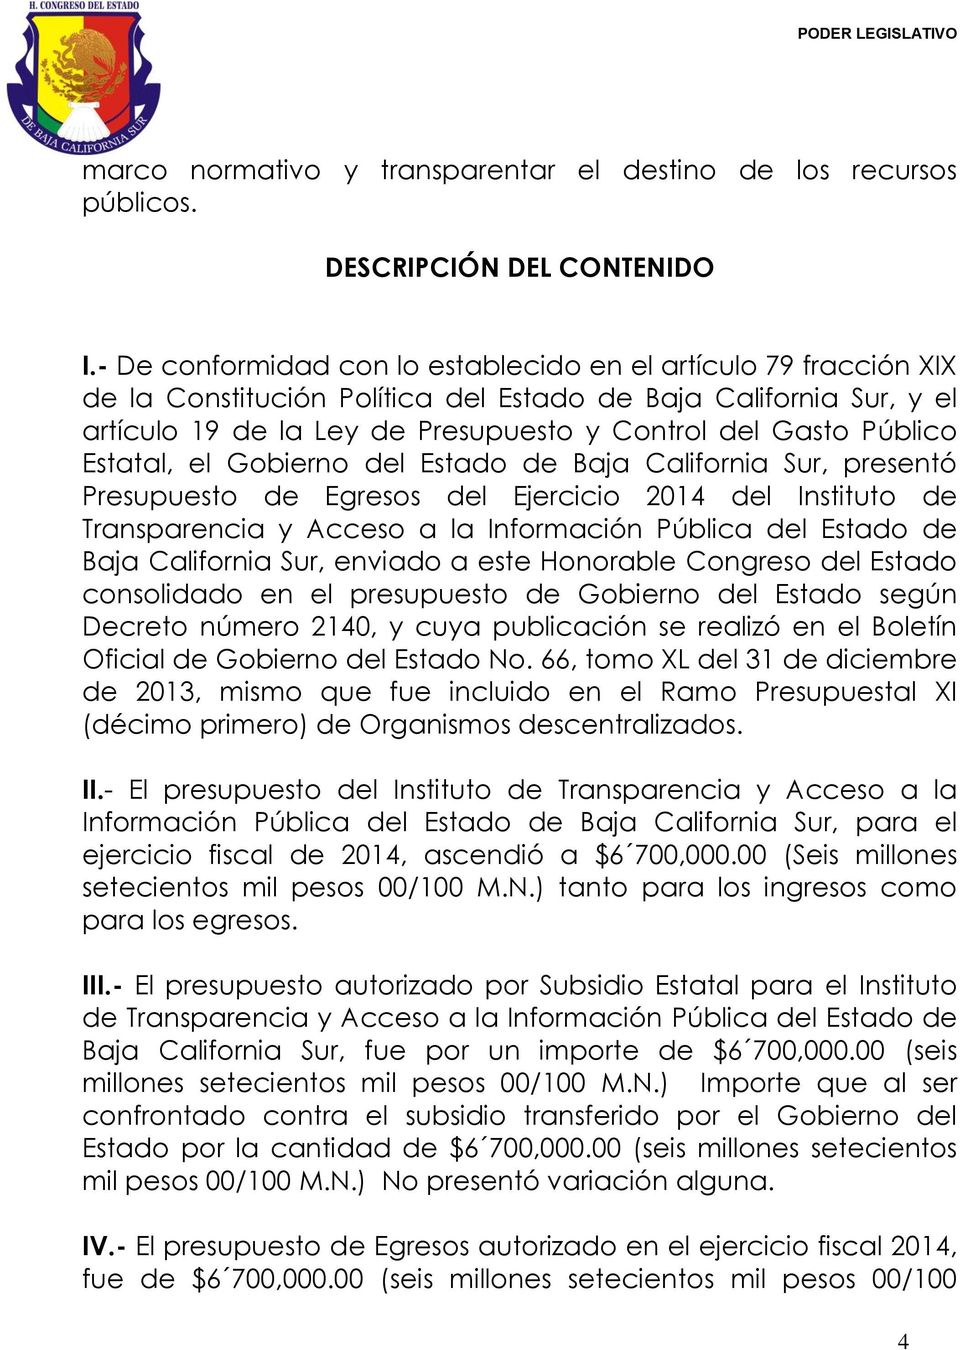 Estatal, el Gobierno del Estado de Baja California Sur, presentó Presupuesto de Egresos del Ejercicio 2014 del Instituto de Transparencia y Acceso a la Información Pública del Estado de Baja